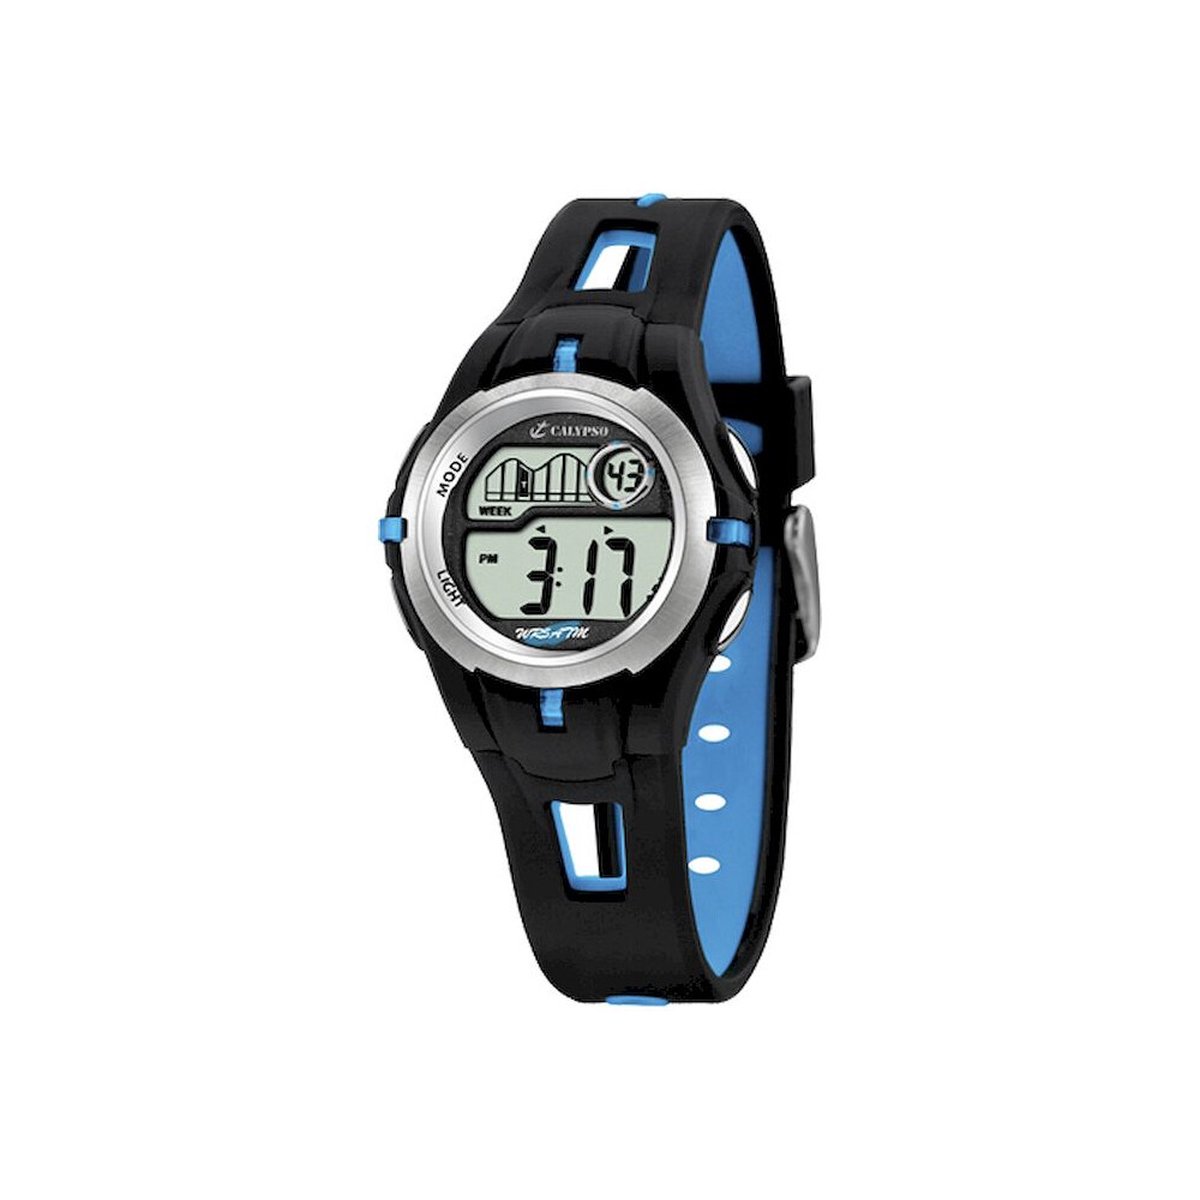 Calypso K5506/4 digitaal horloge 34 mm 100 meter zwart/ blauw